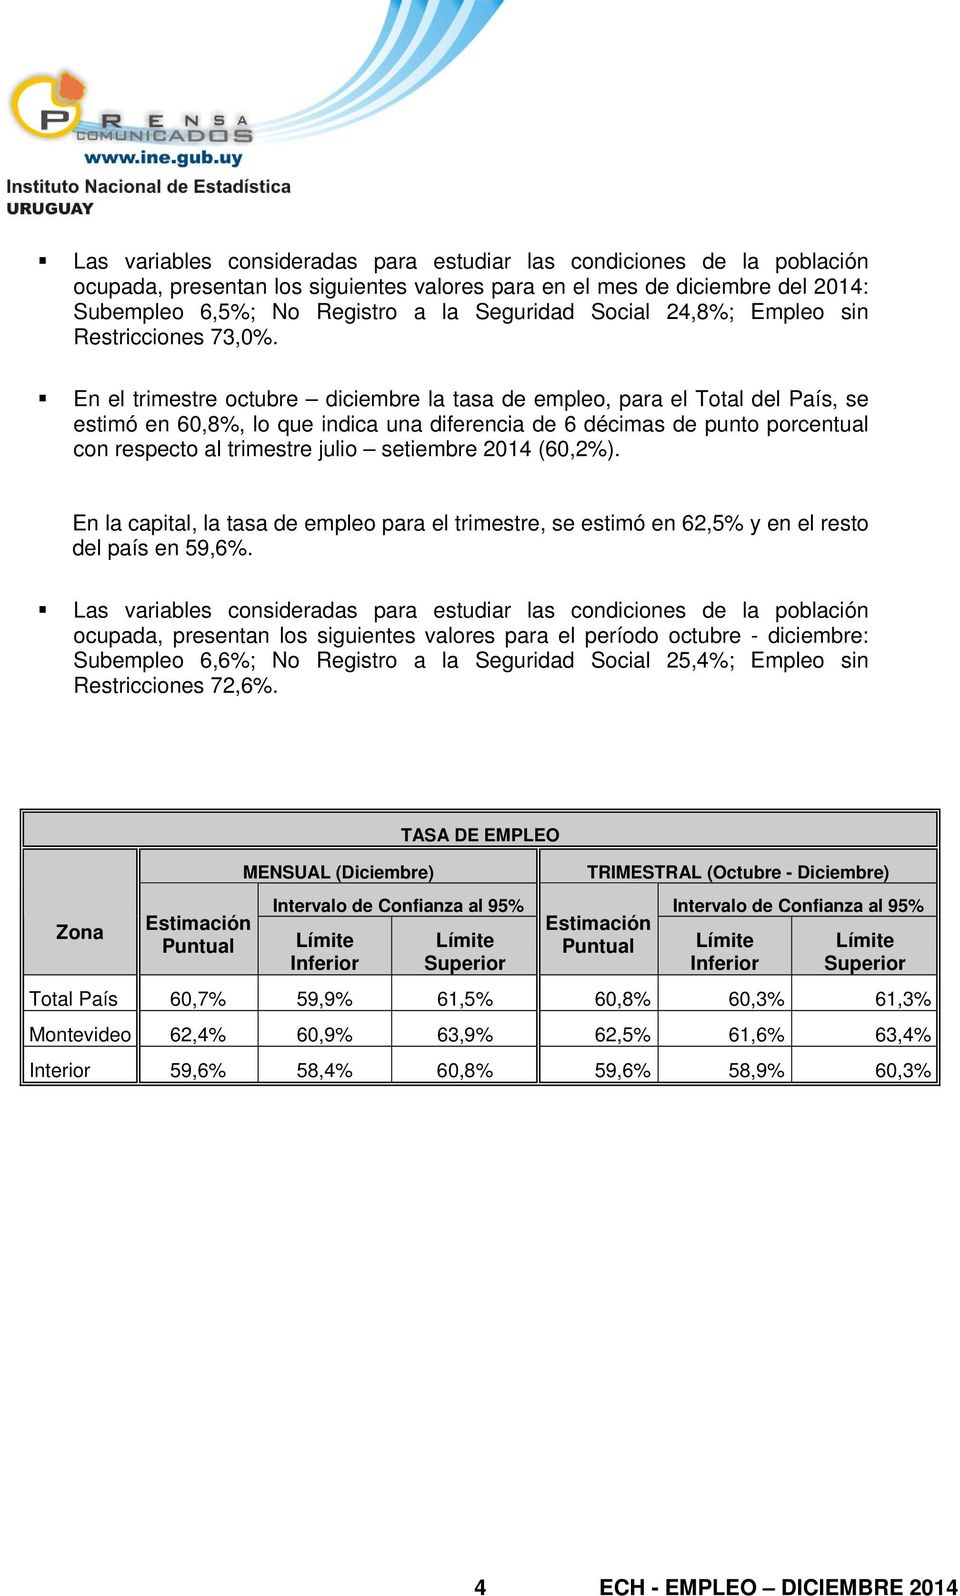 En el trimestre octubre diciembre la tasa de empleo, para el Total del País, se estimó en 60,8%, lo que indica una diferencia de 6 décimas de punto porcentual con respecto al trimestre julio